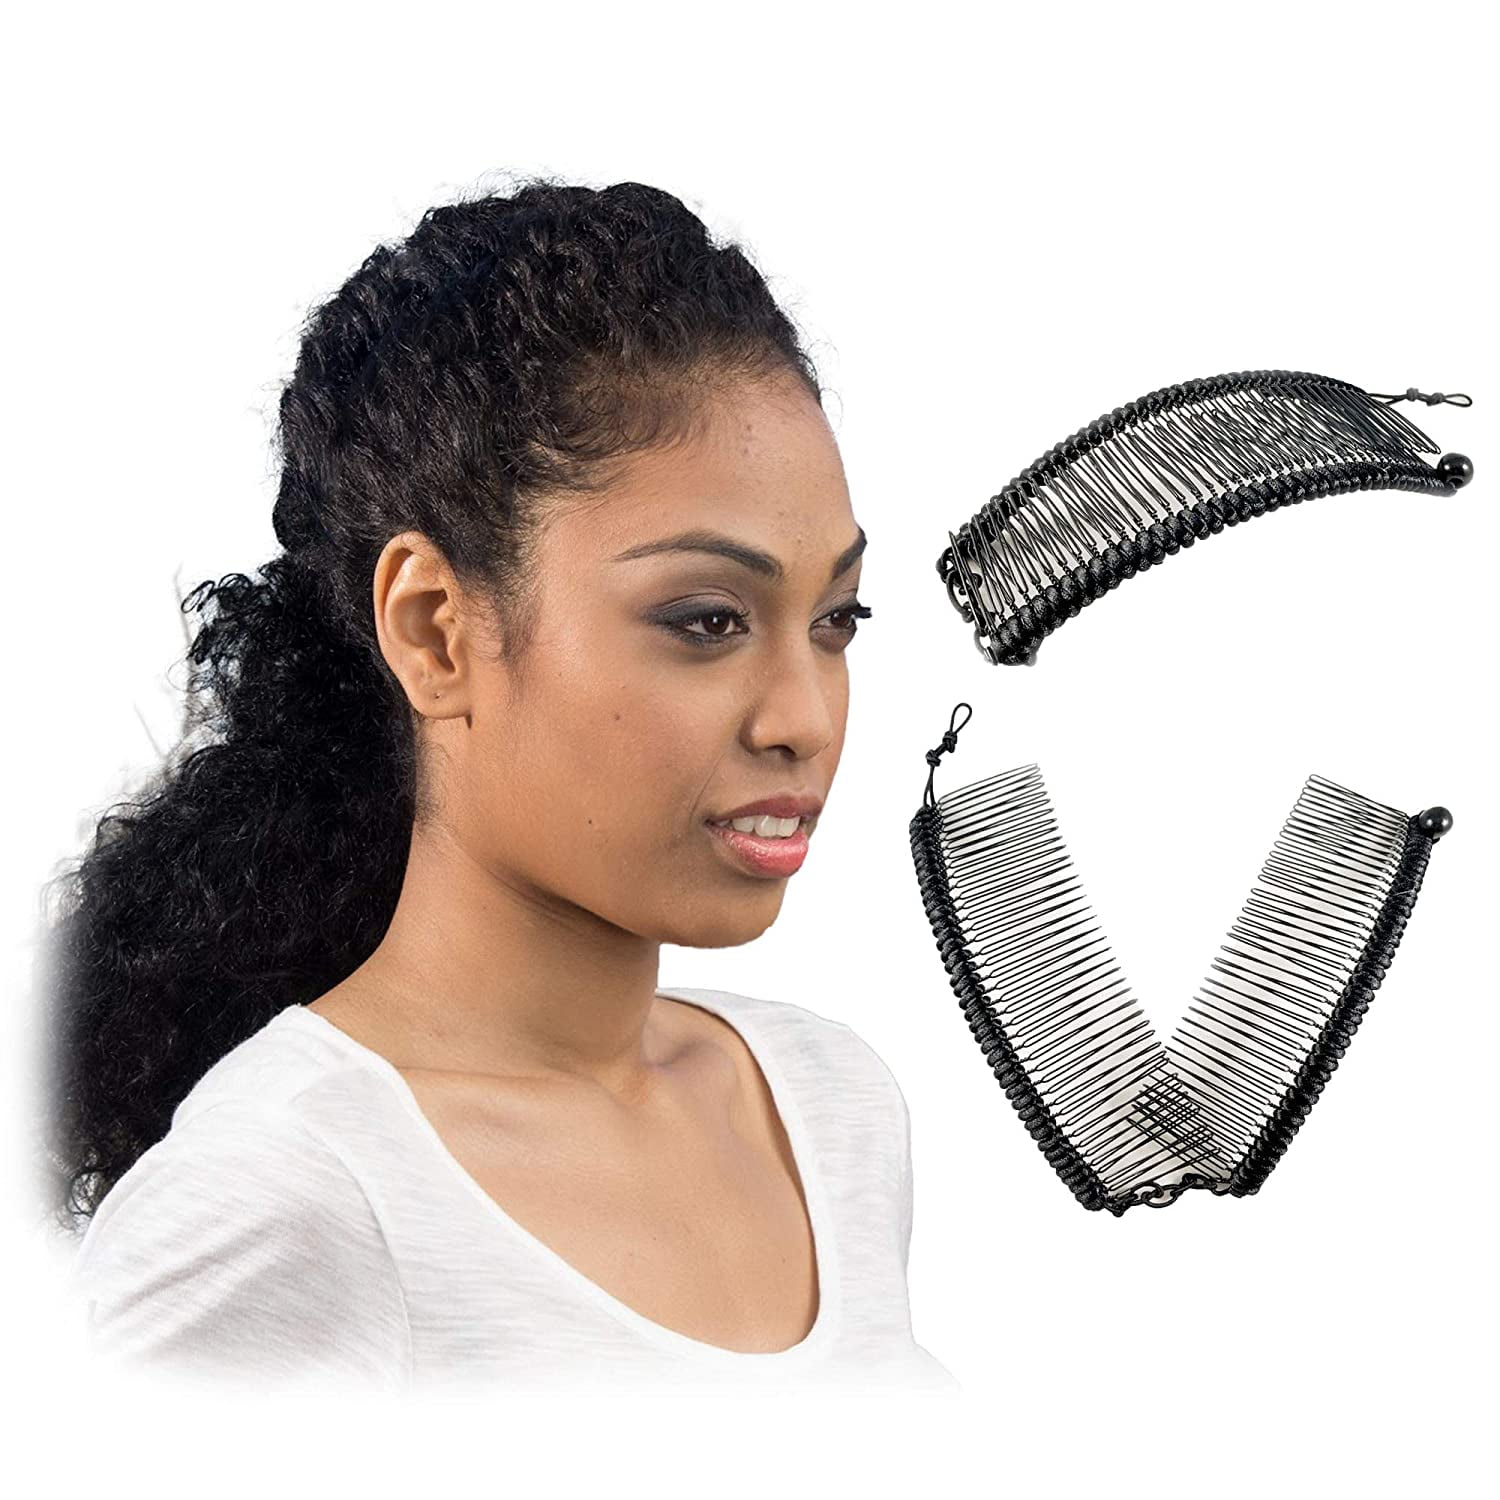 Hair Tools Organizer Cute Girls Disposable Elastic Hair Tie